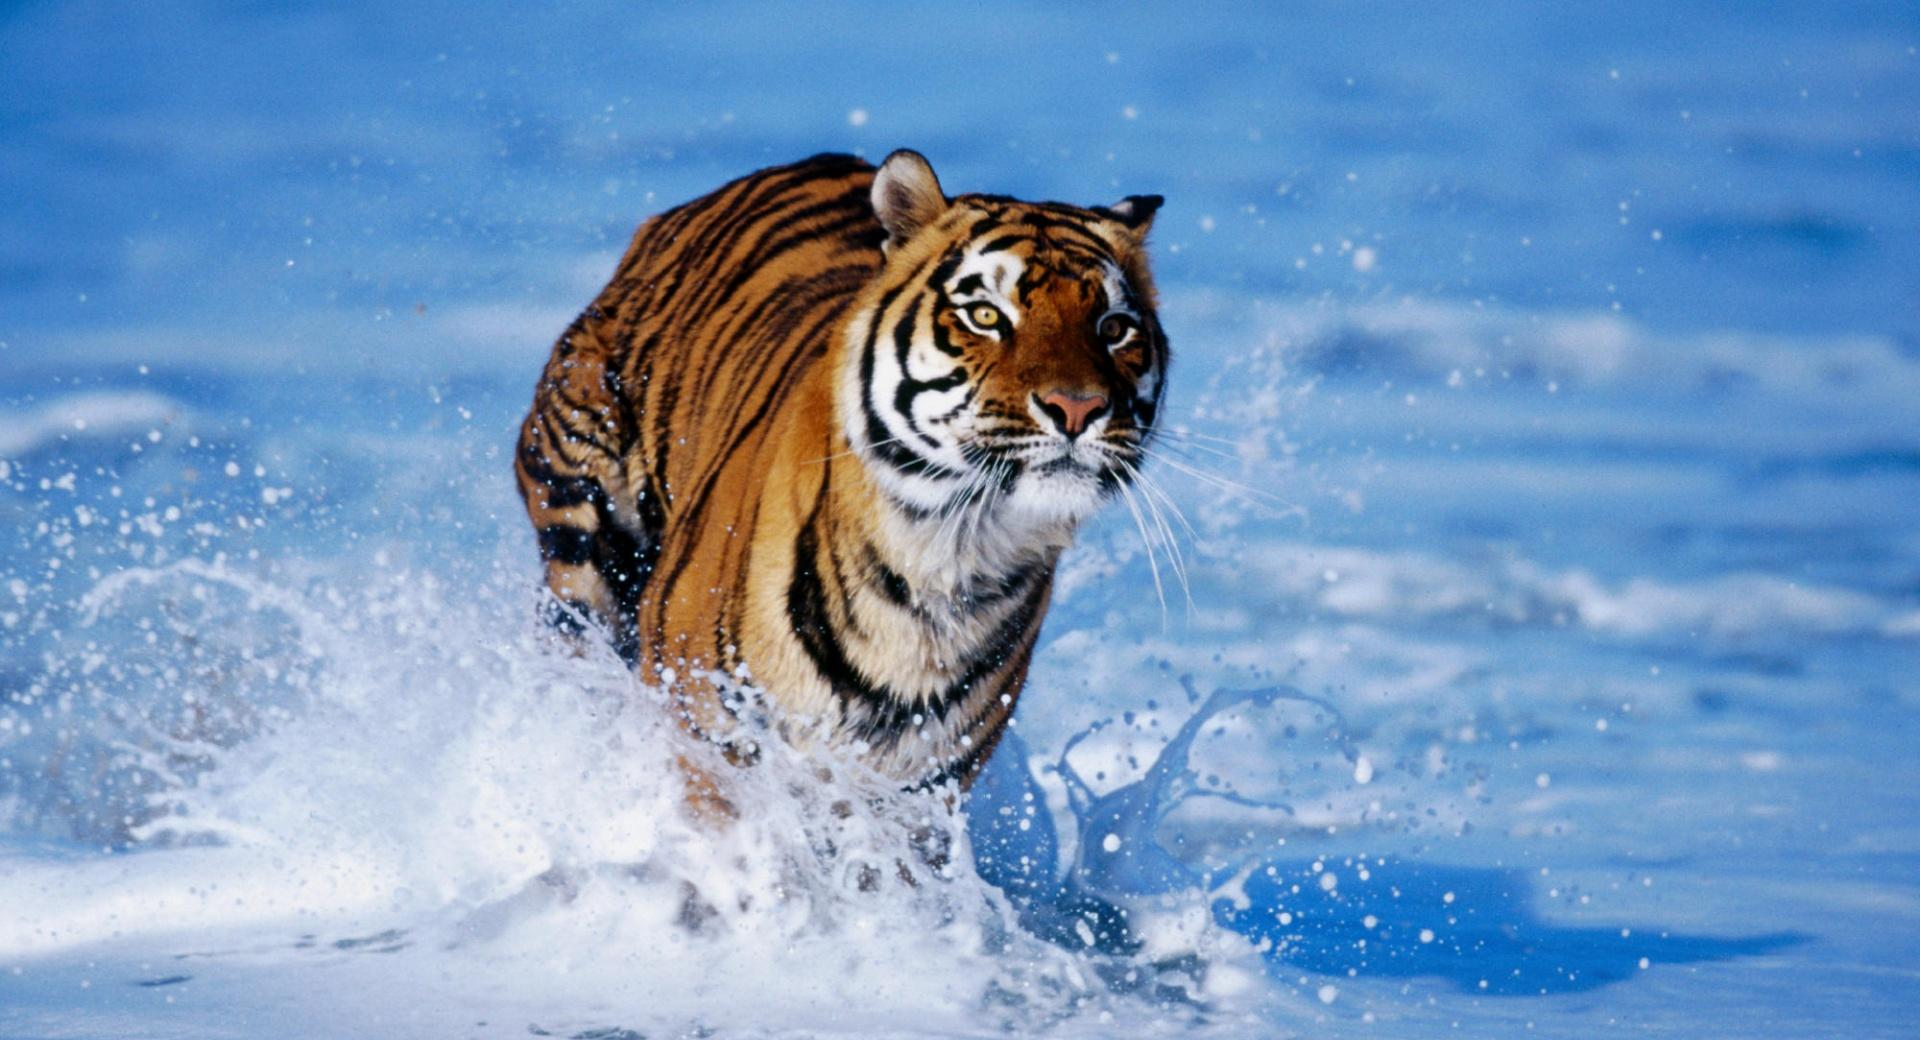 Bengal Tiger Panthera Tigris Tigris at 1024 x 768 size wallpapers HD quality